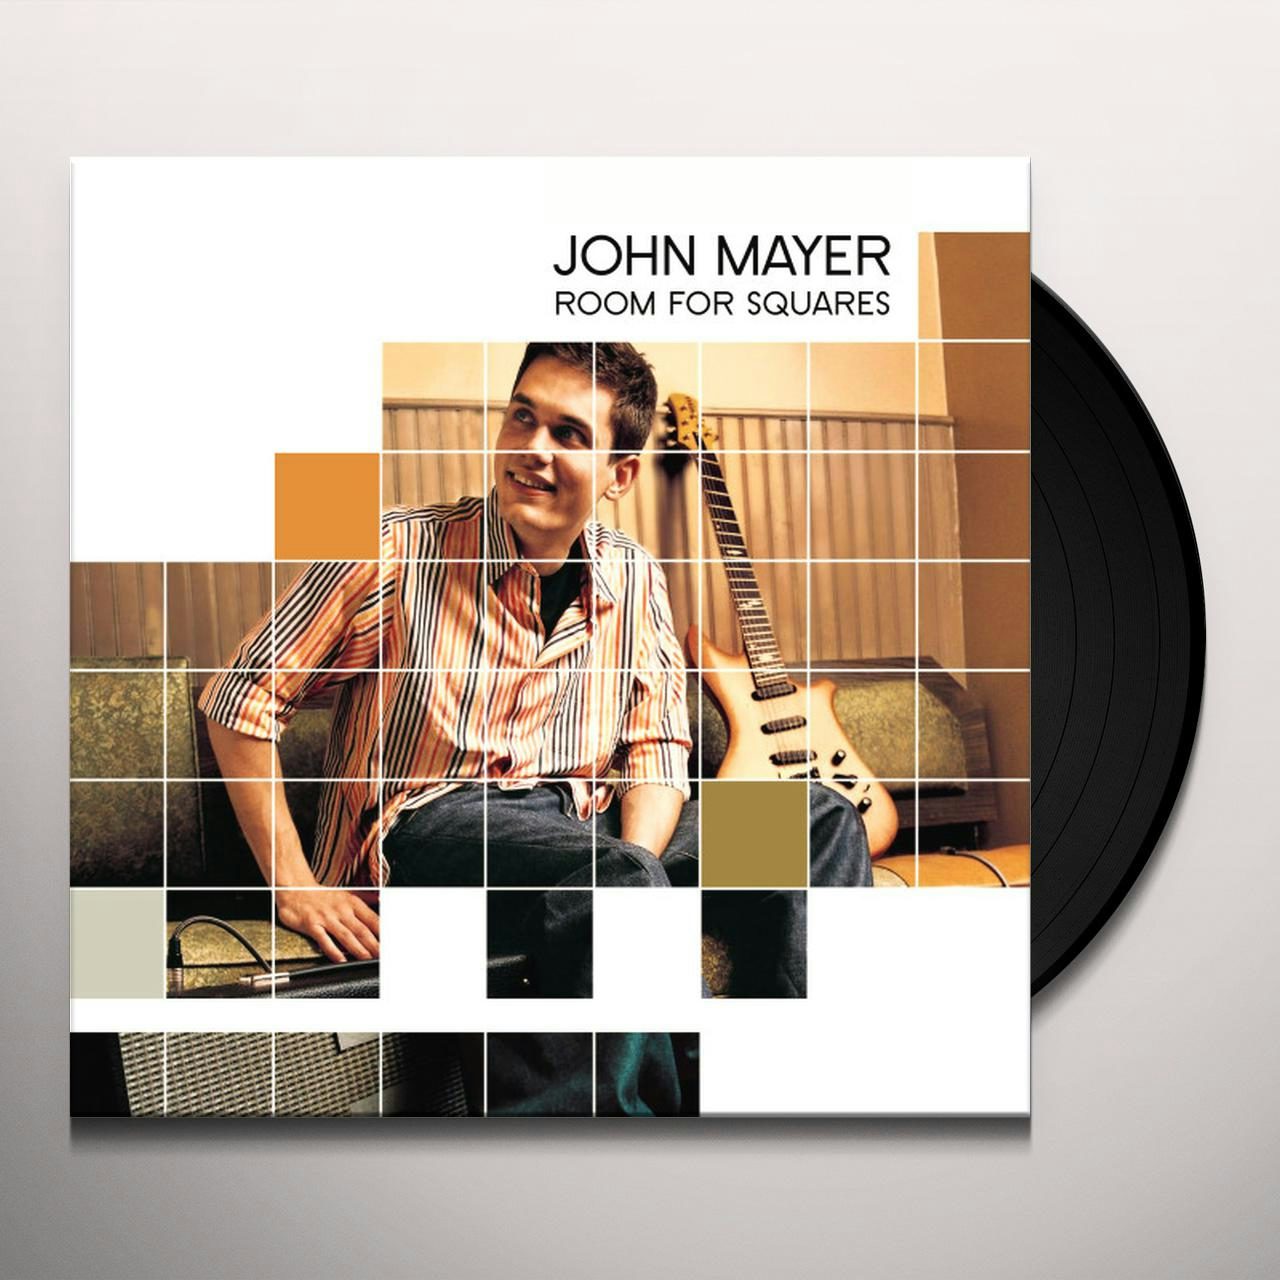 John Mayer Official John Mayer Merch Store on Merchbar Shop Now!